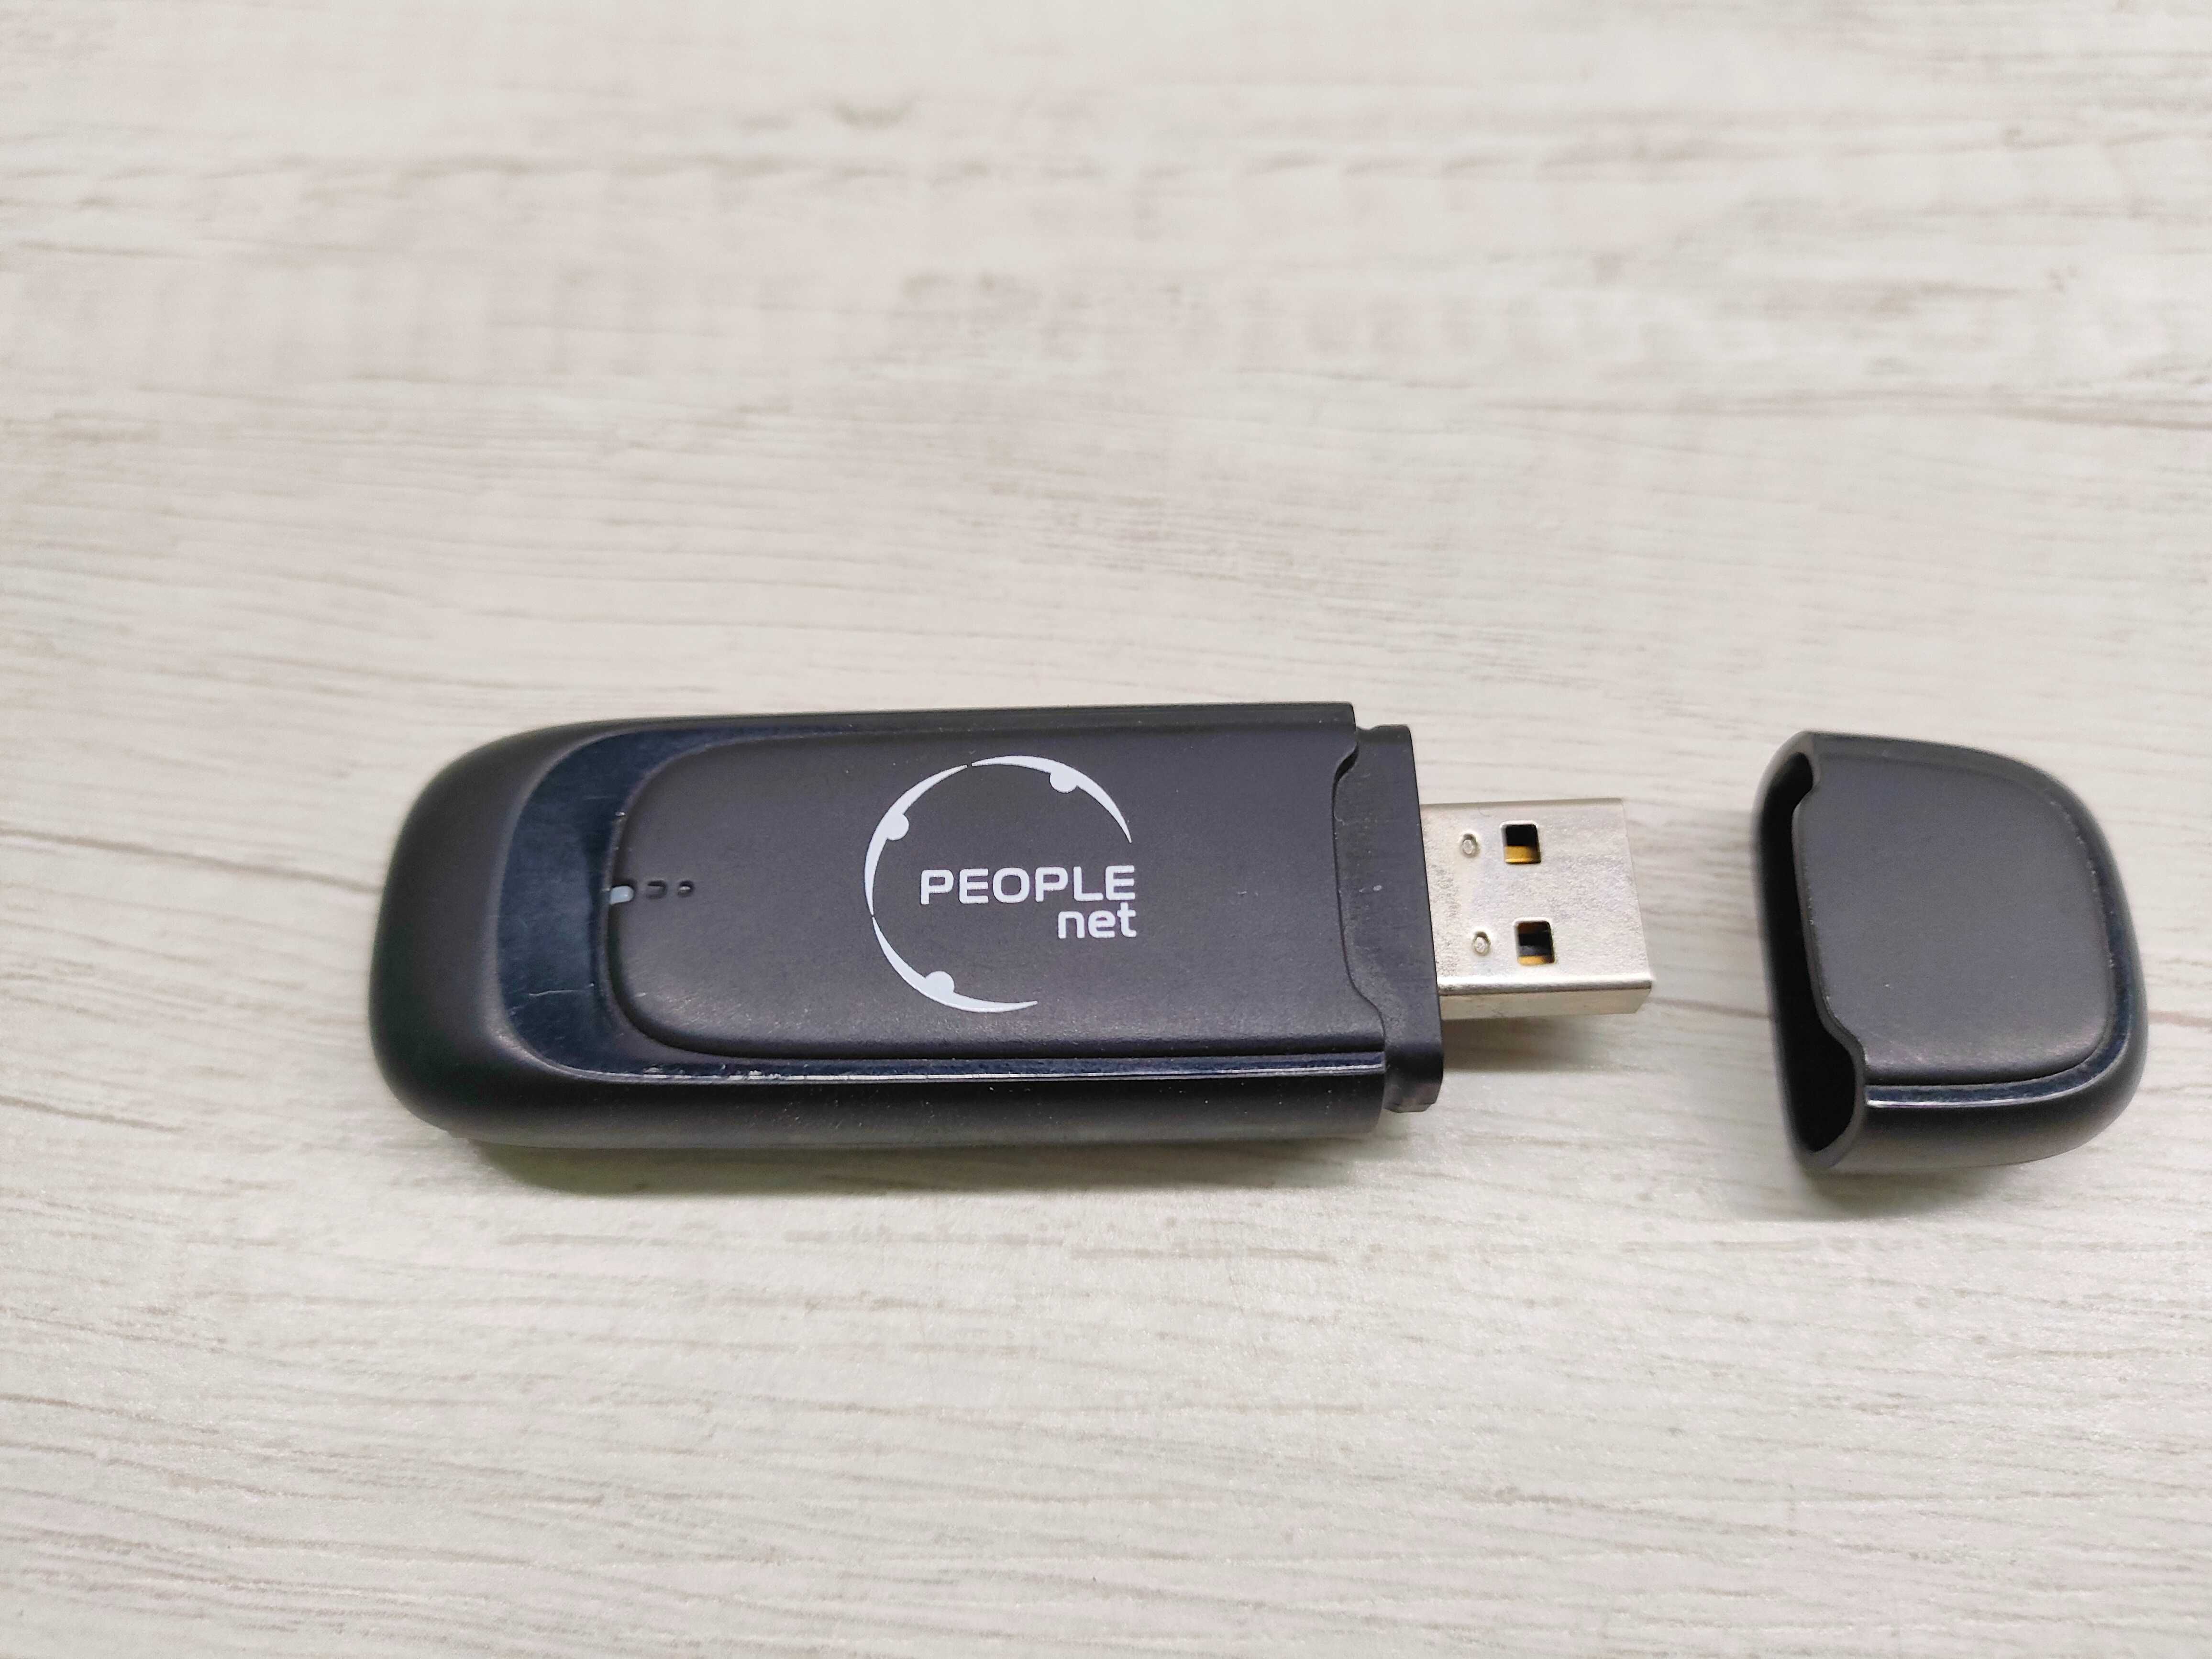 USB модем Huawei EC 1260 CDMA people net (є слот для microSD карти)